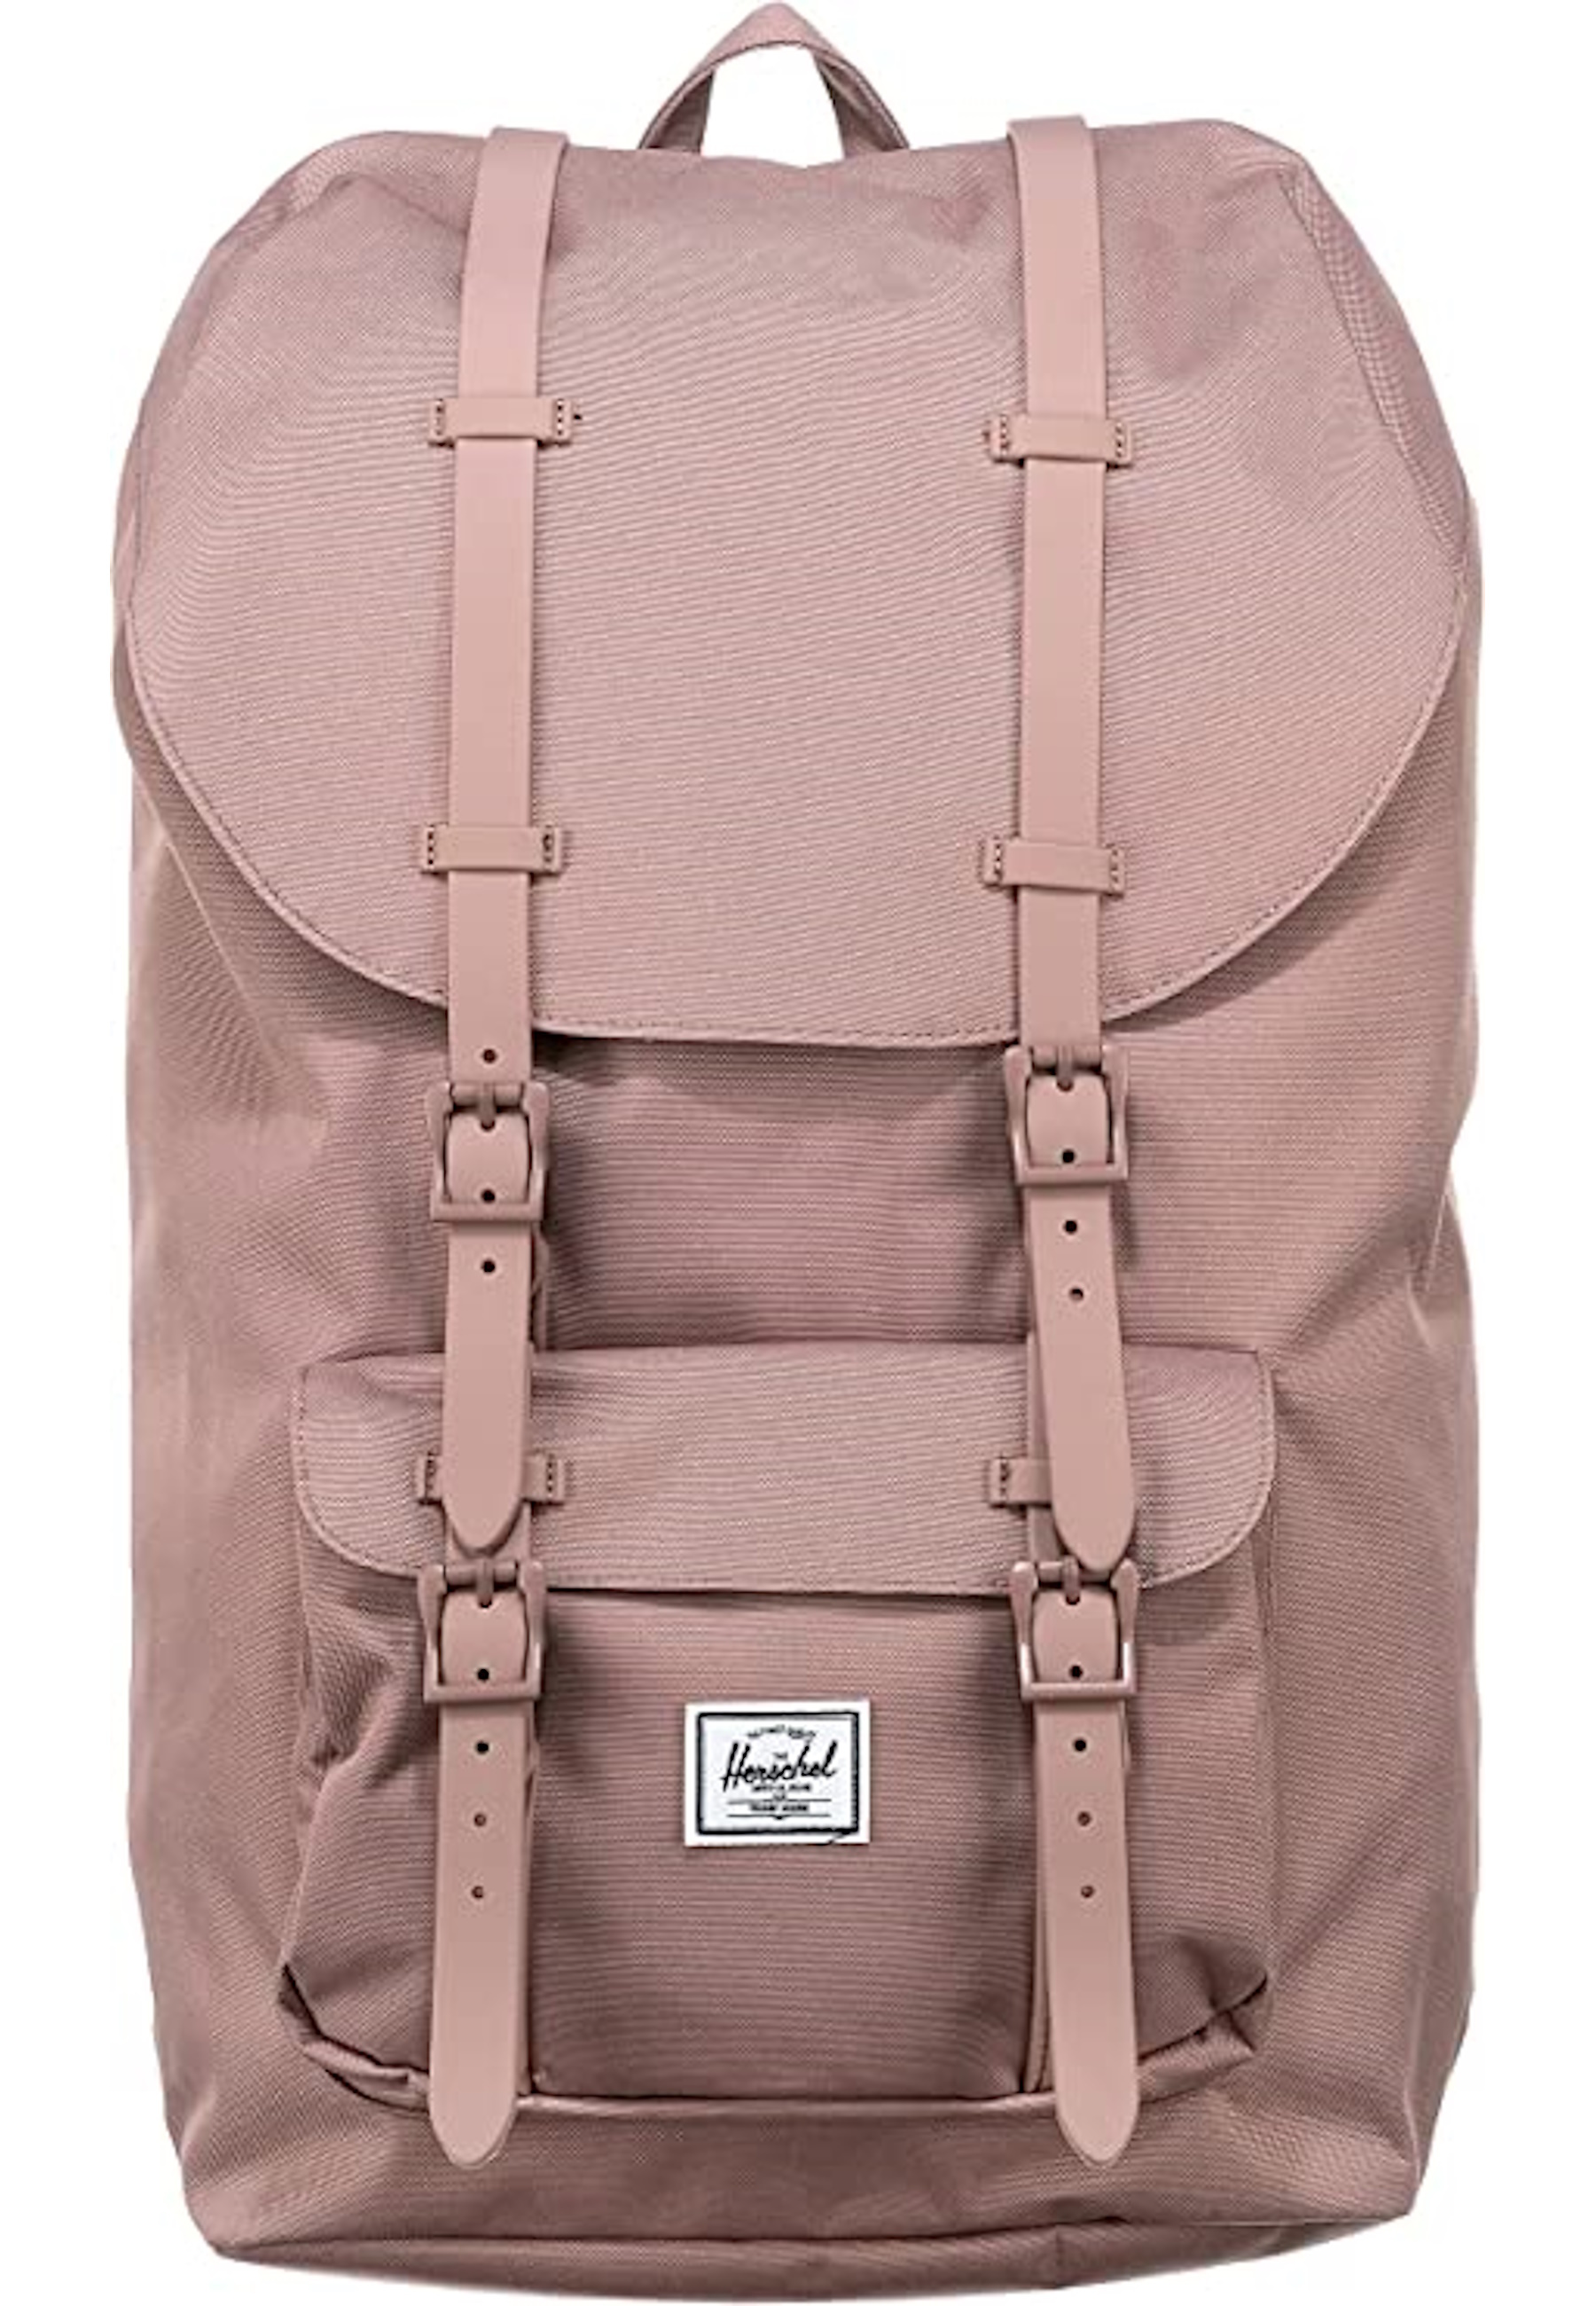 Рюкзак Herschel 'Little America', розовый поставка рюкзаков среднего размера little america рюкзак цвета морской волны herschel